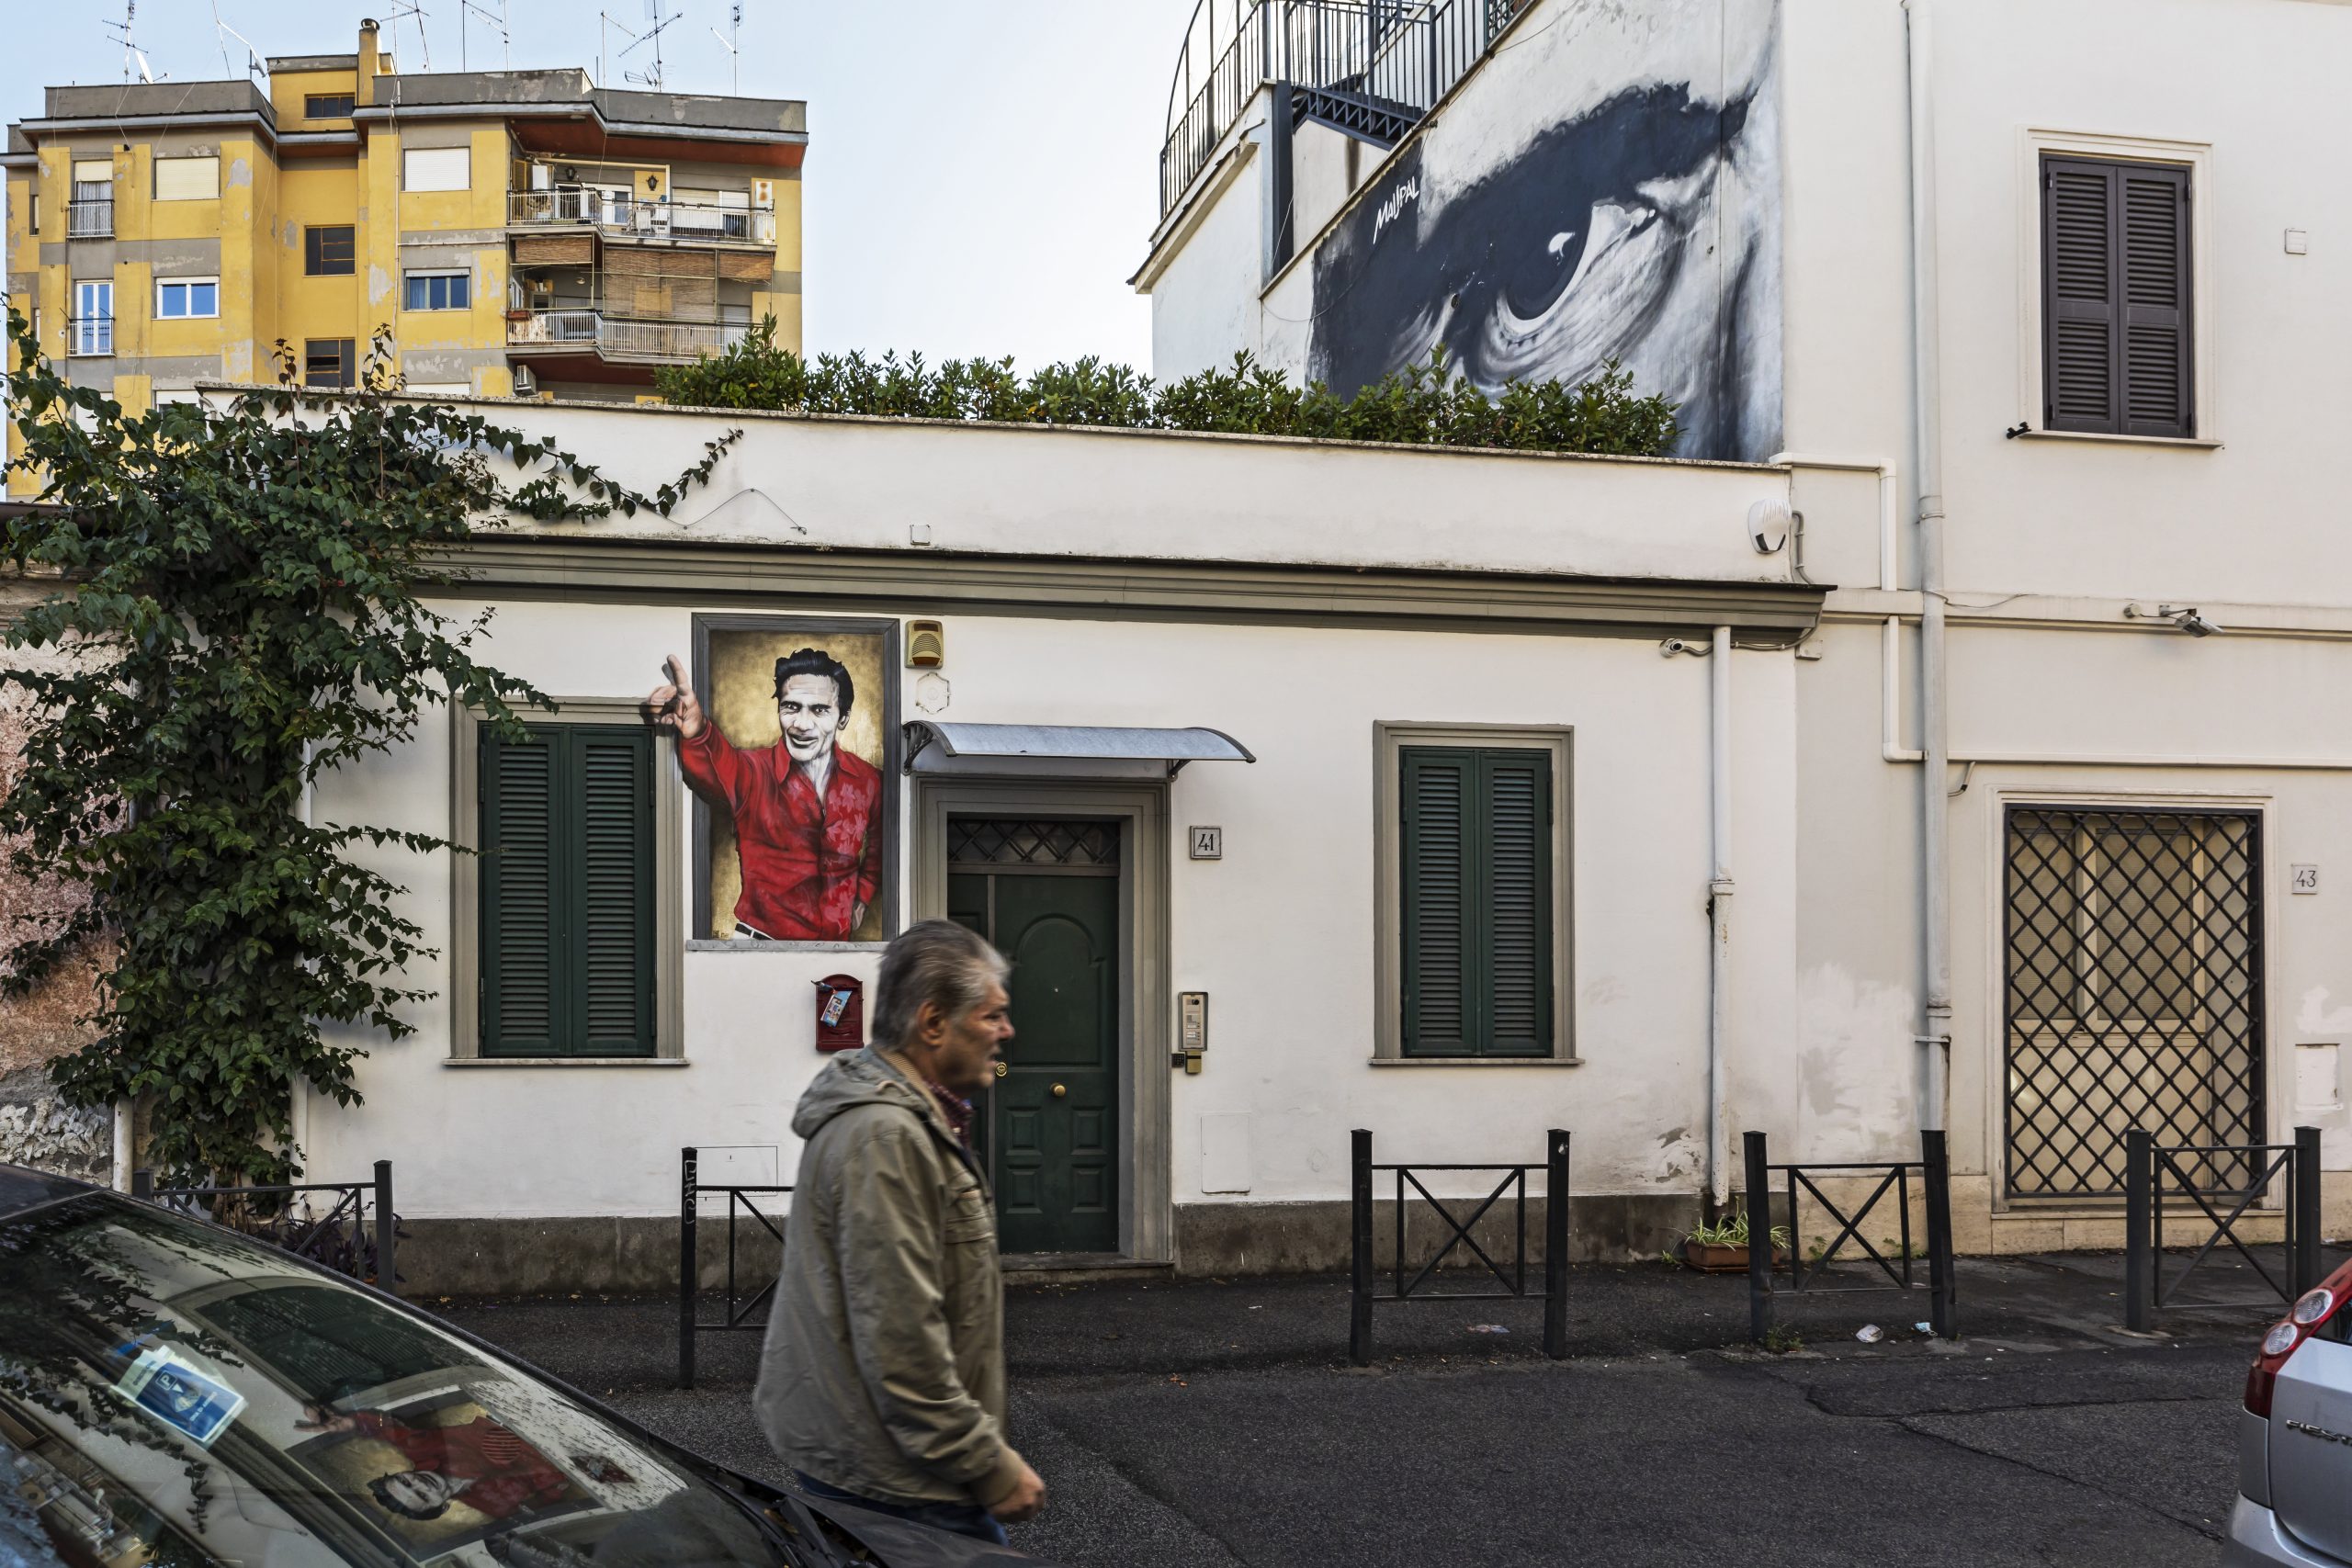 Roma - Murales dedicati a Pasolini in Via Fanfulla da Lodi al Pigneto dove Pasolini girò buona parte del suo primo film Accattone. Quello in alto a destra si intitola “L’occhio è l’unico che può accorgersi della bellezza” realizzato dallo street artist Maupal.